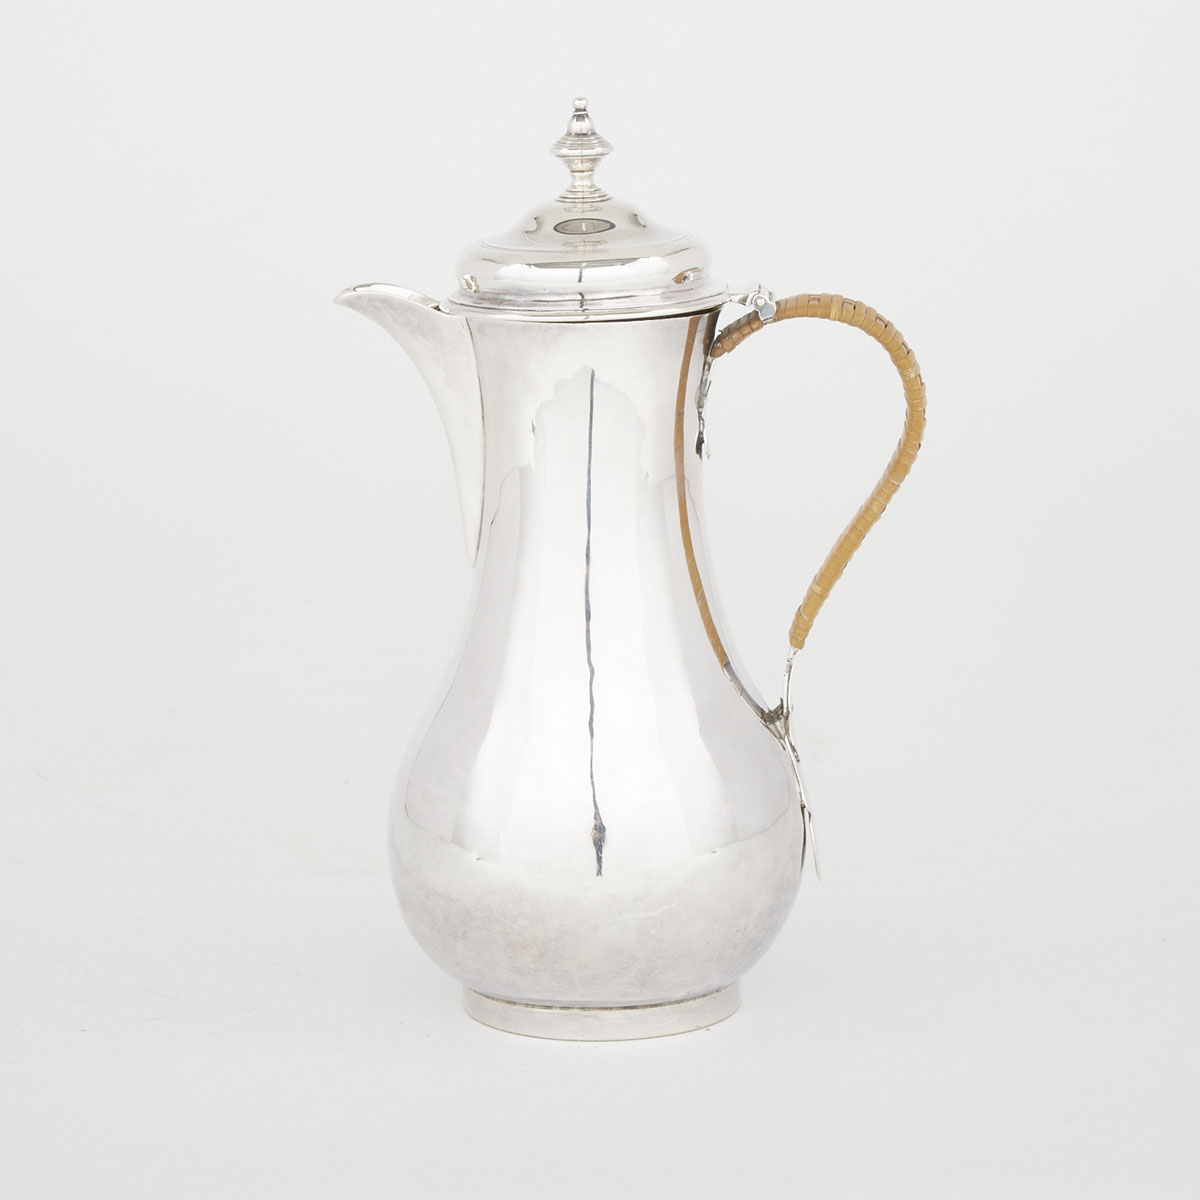 George II Silver Hot Water Pot, Elizabeth Godfrey, London, c.1750-60